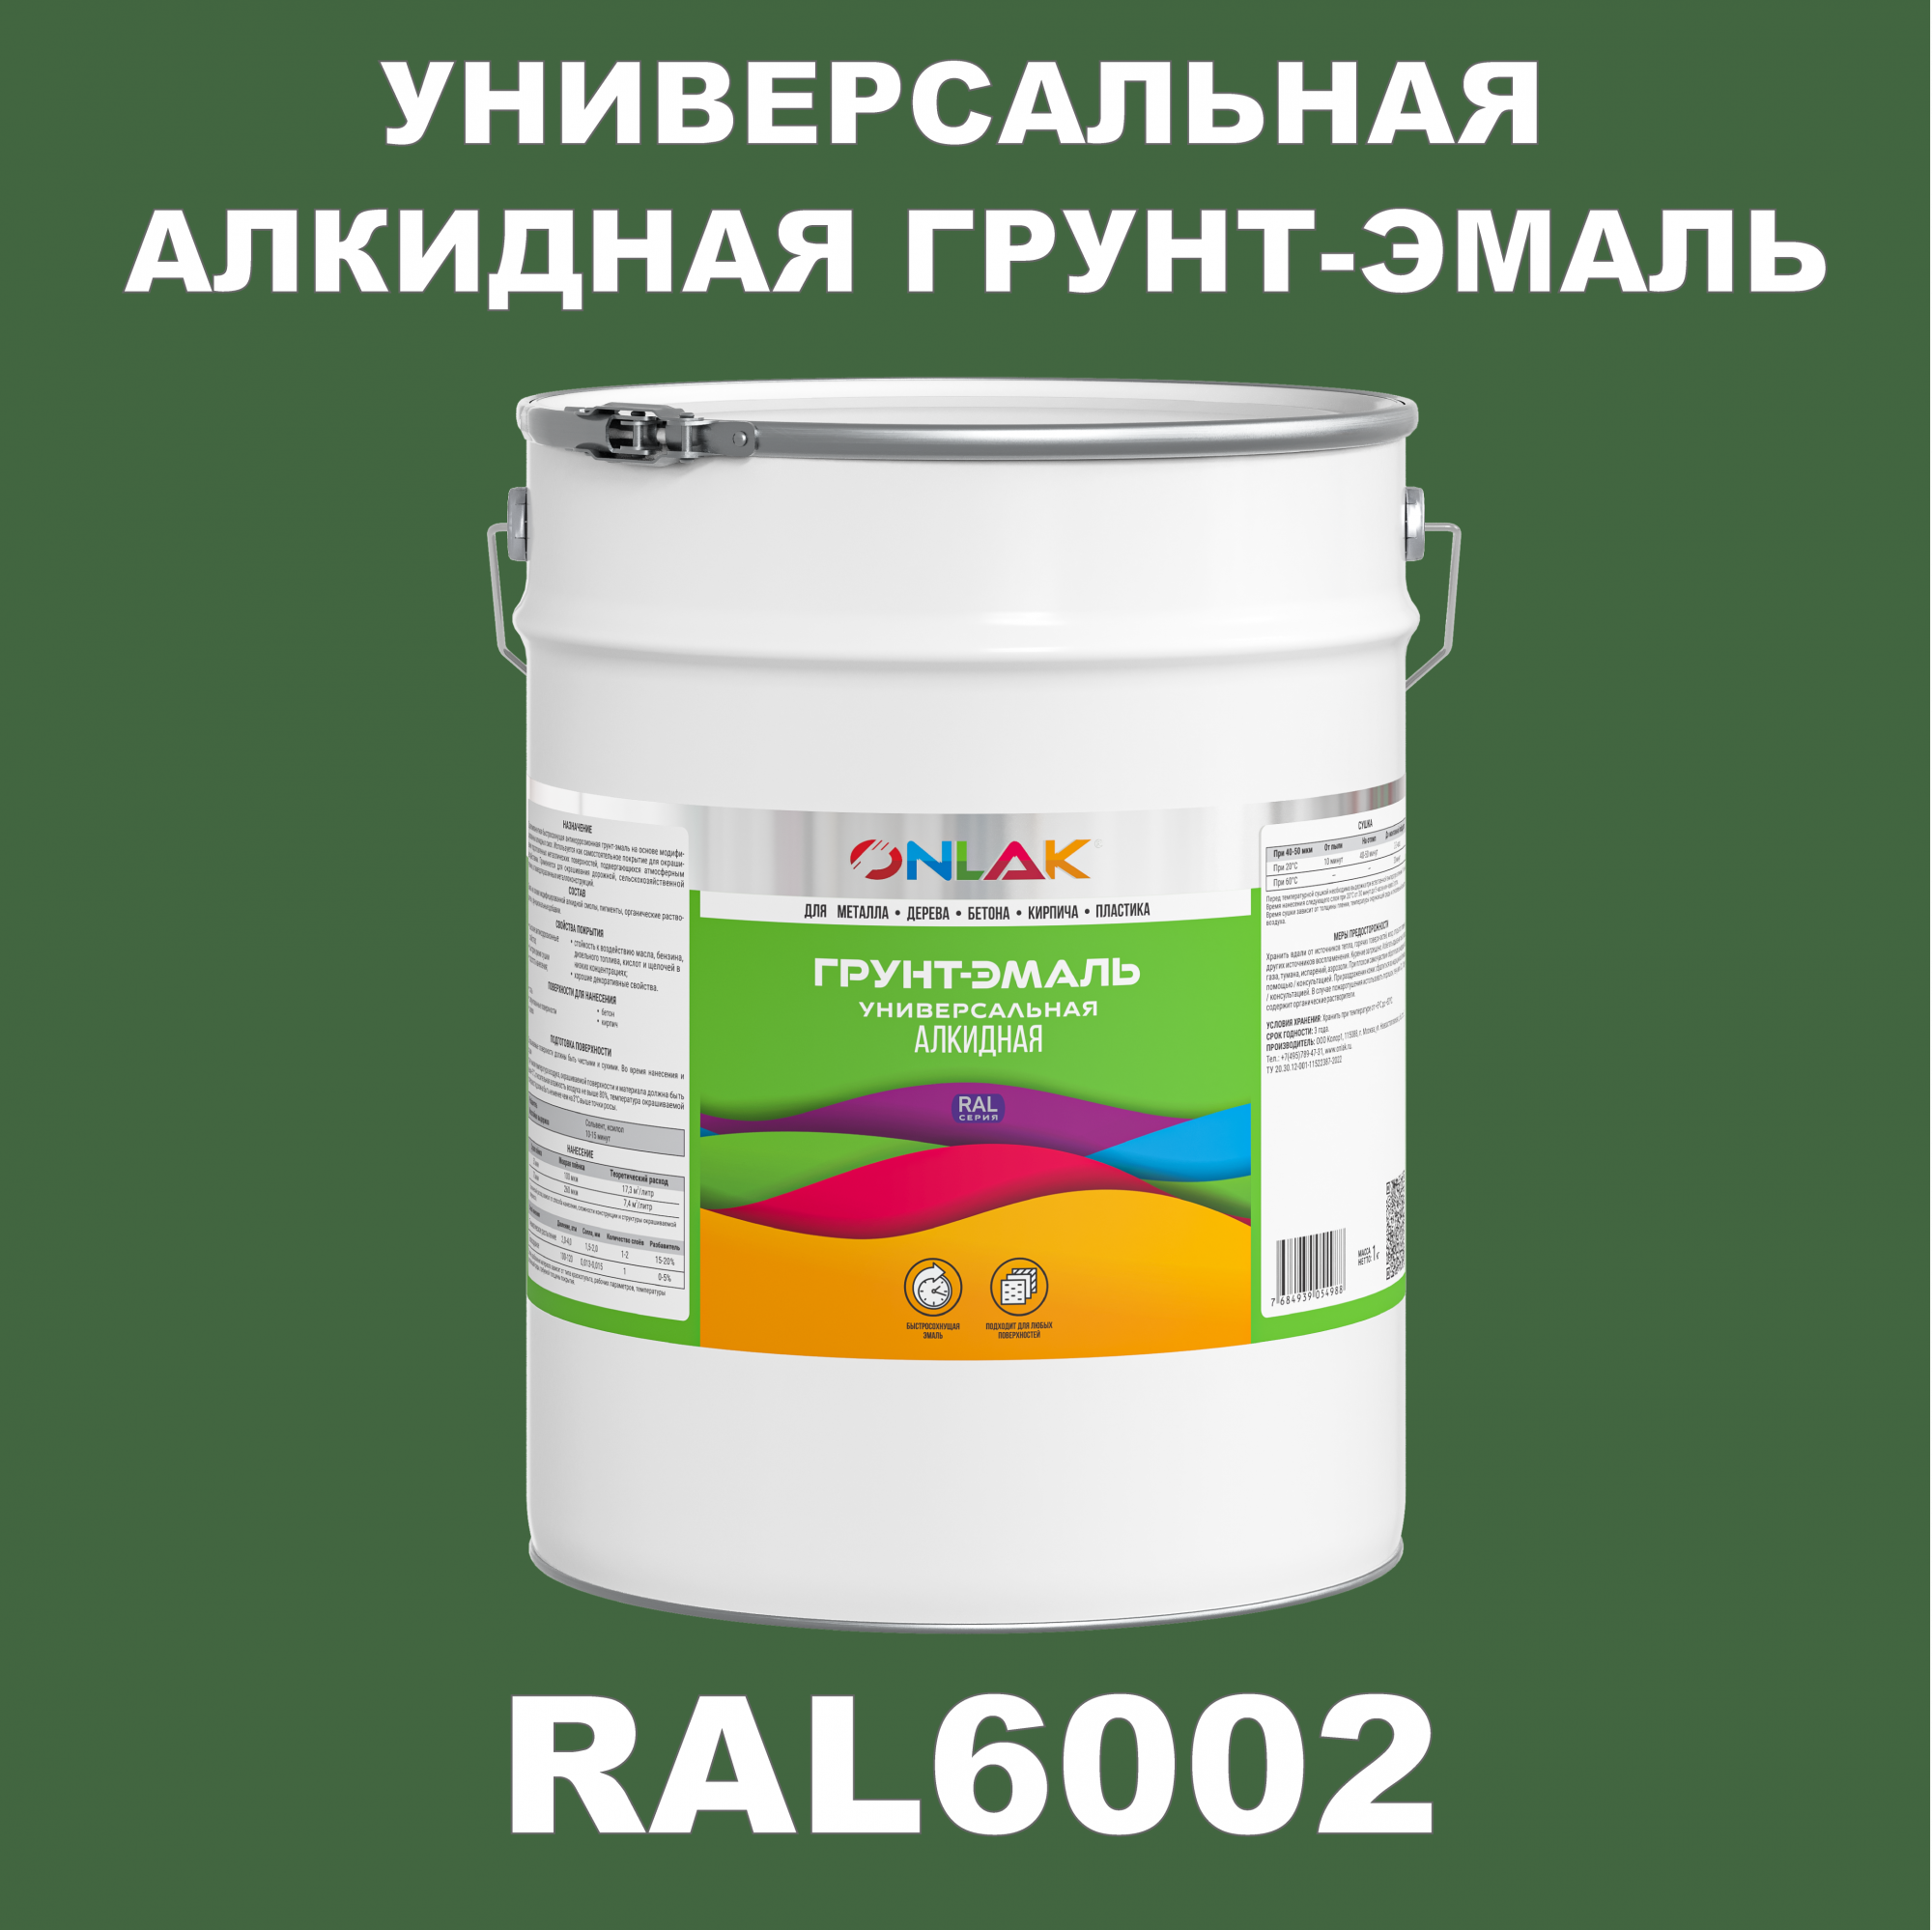 Грунт-эмаль ONLAK 1К RAL6002 антикоррозионная алкидная по металлу по ржавчине 20 кг грунт эмаль neomid по ржавчине быстросохнущая алкидная серая 0 9 кг